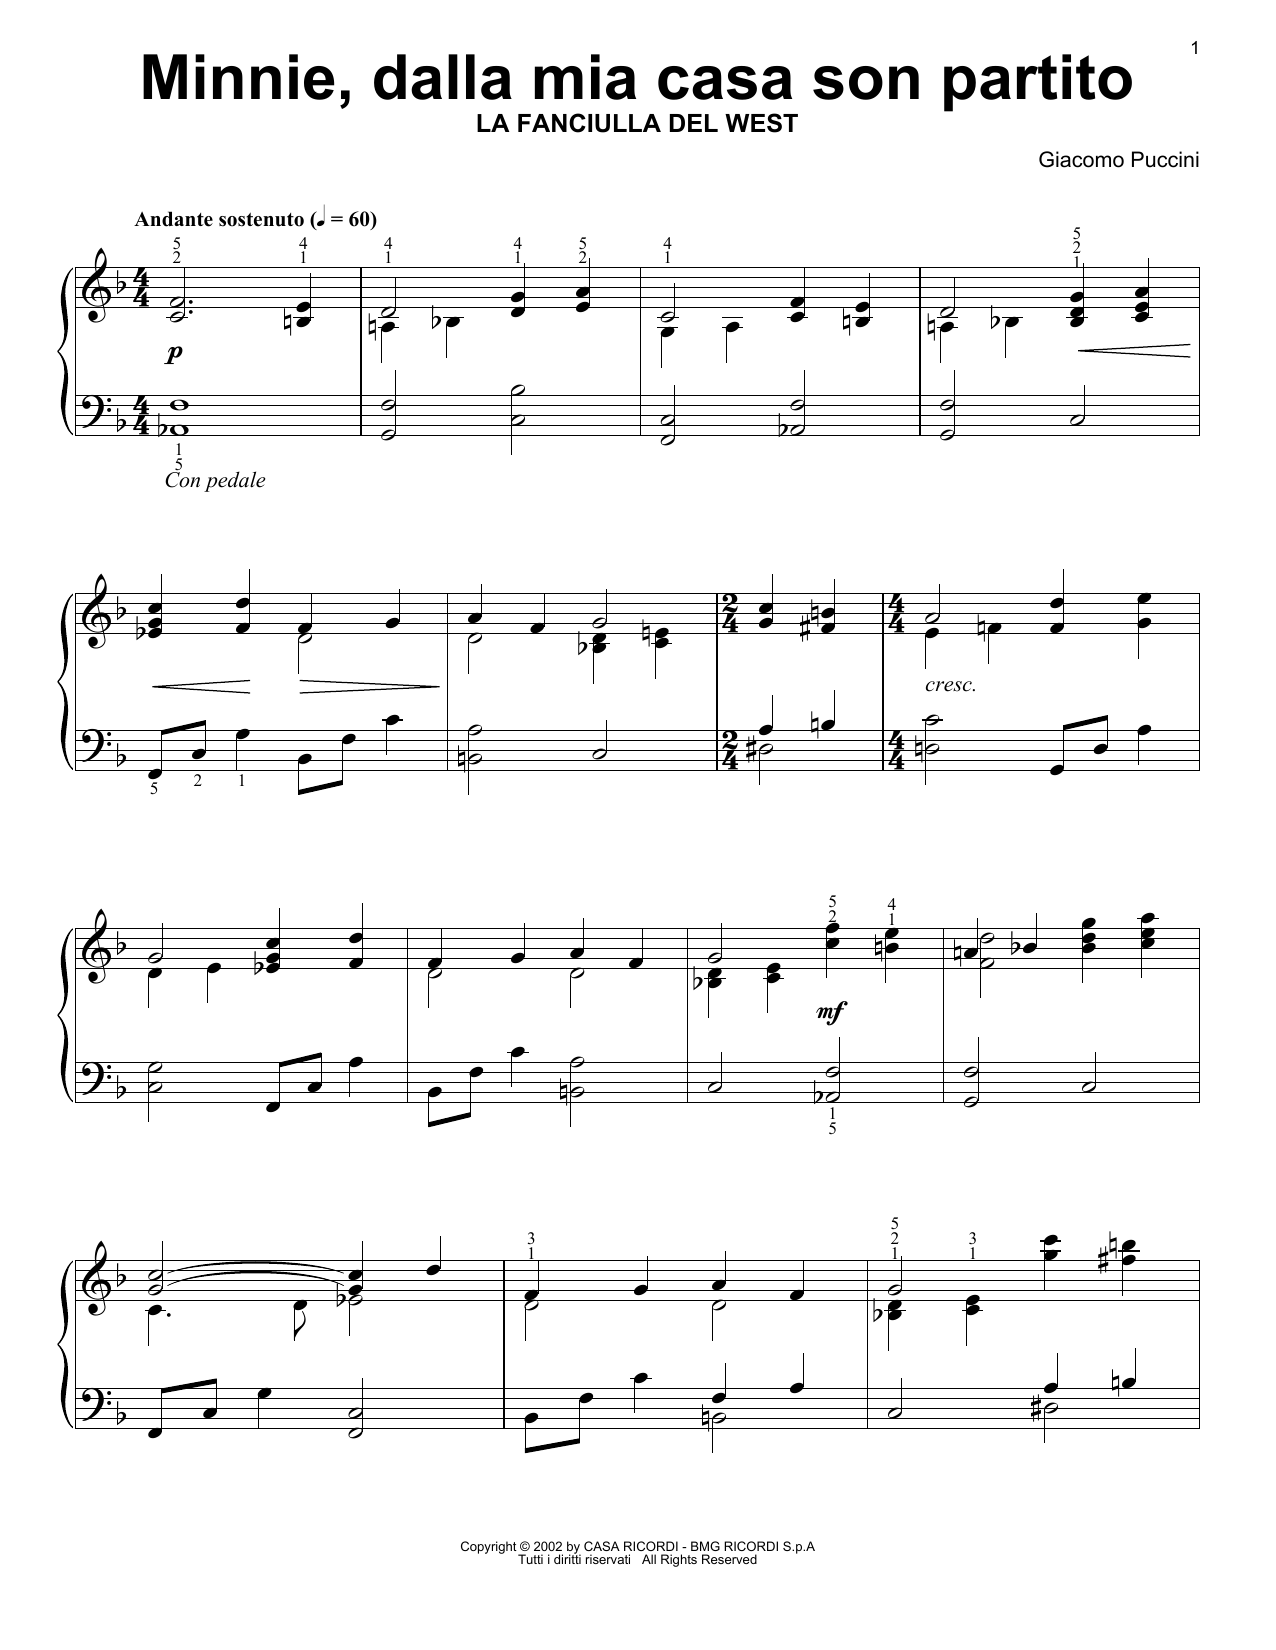 Giacomo Puccini Minnie, Dalla Mia Casa Son Partito sheet music notes printable PDF score